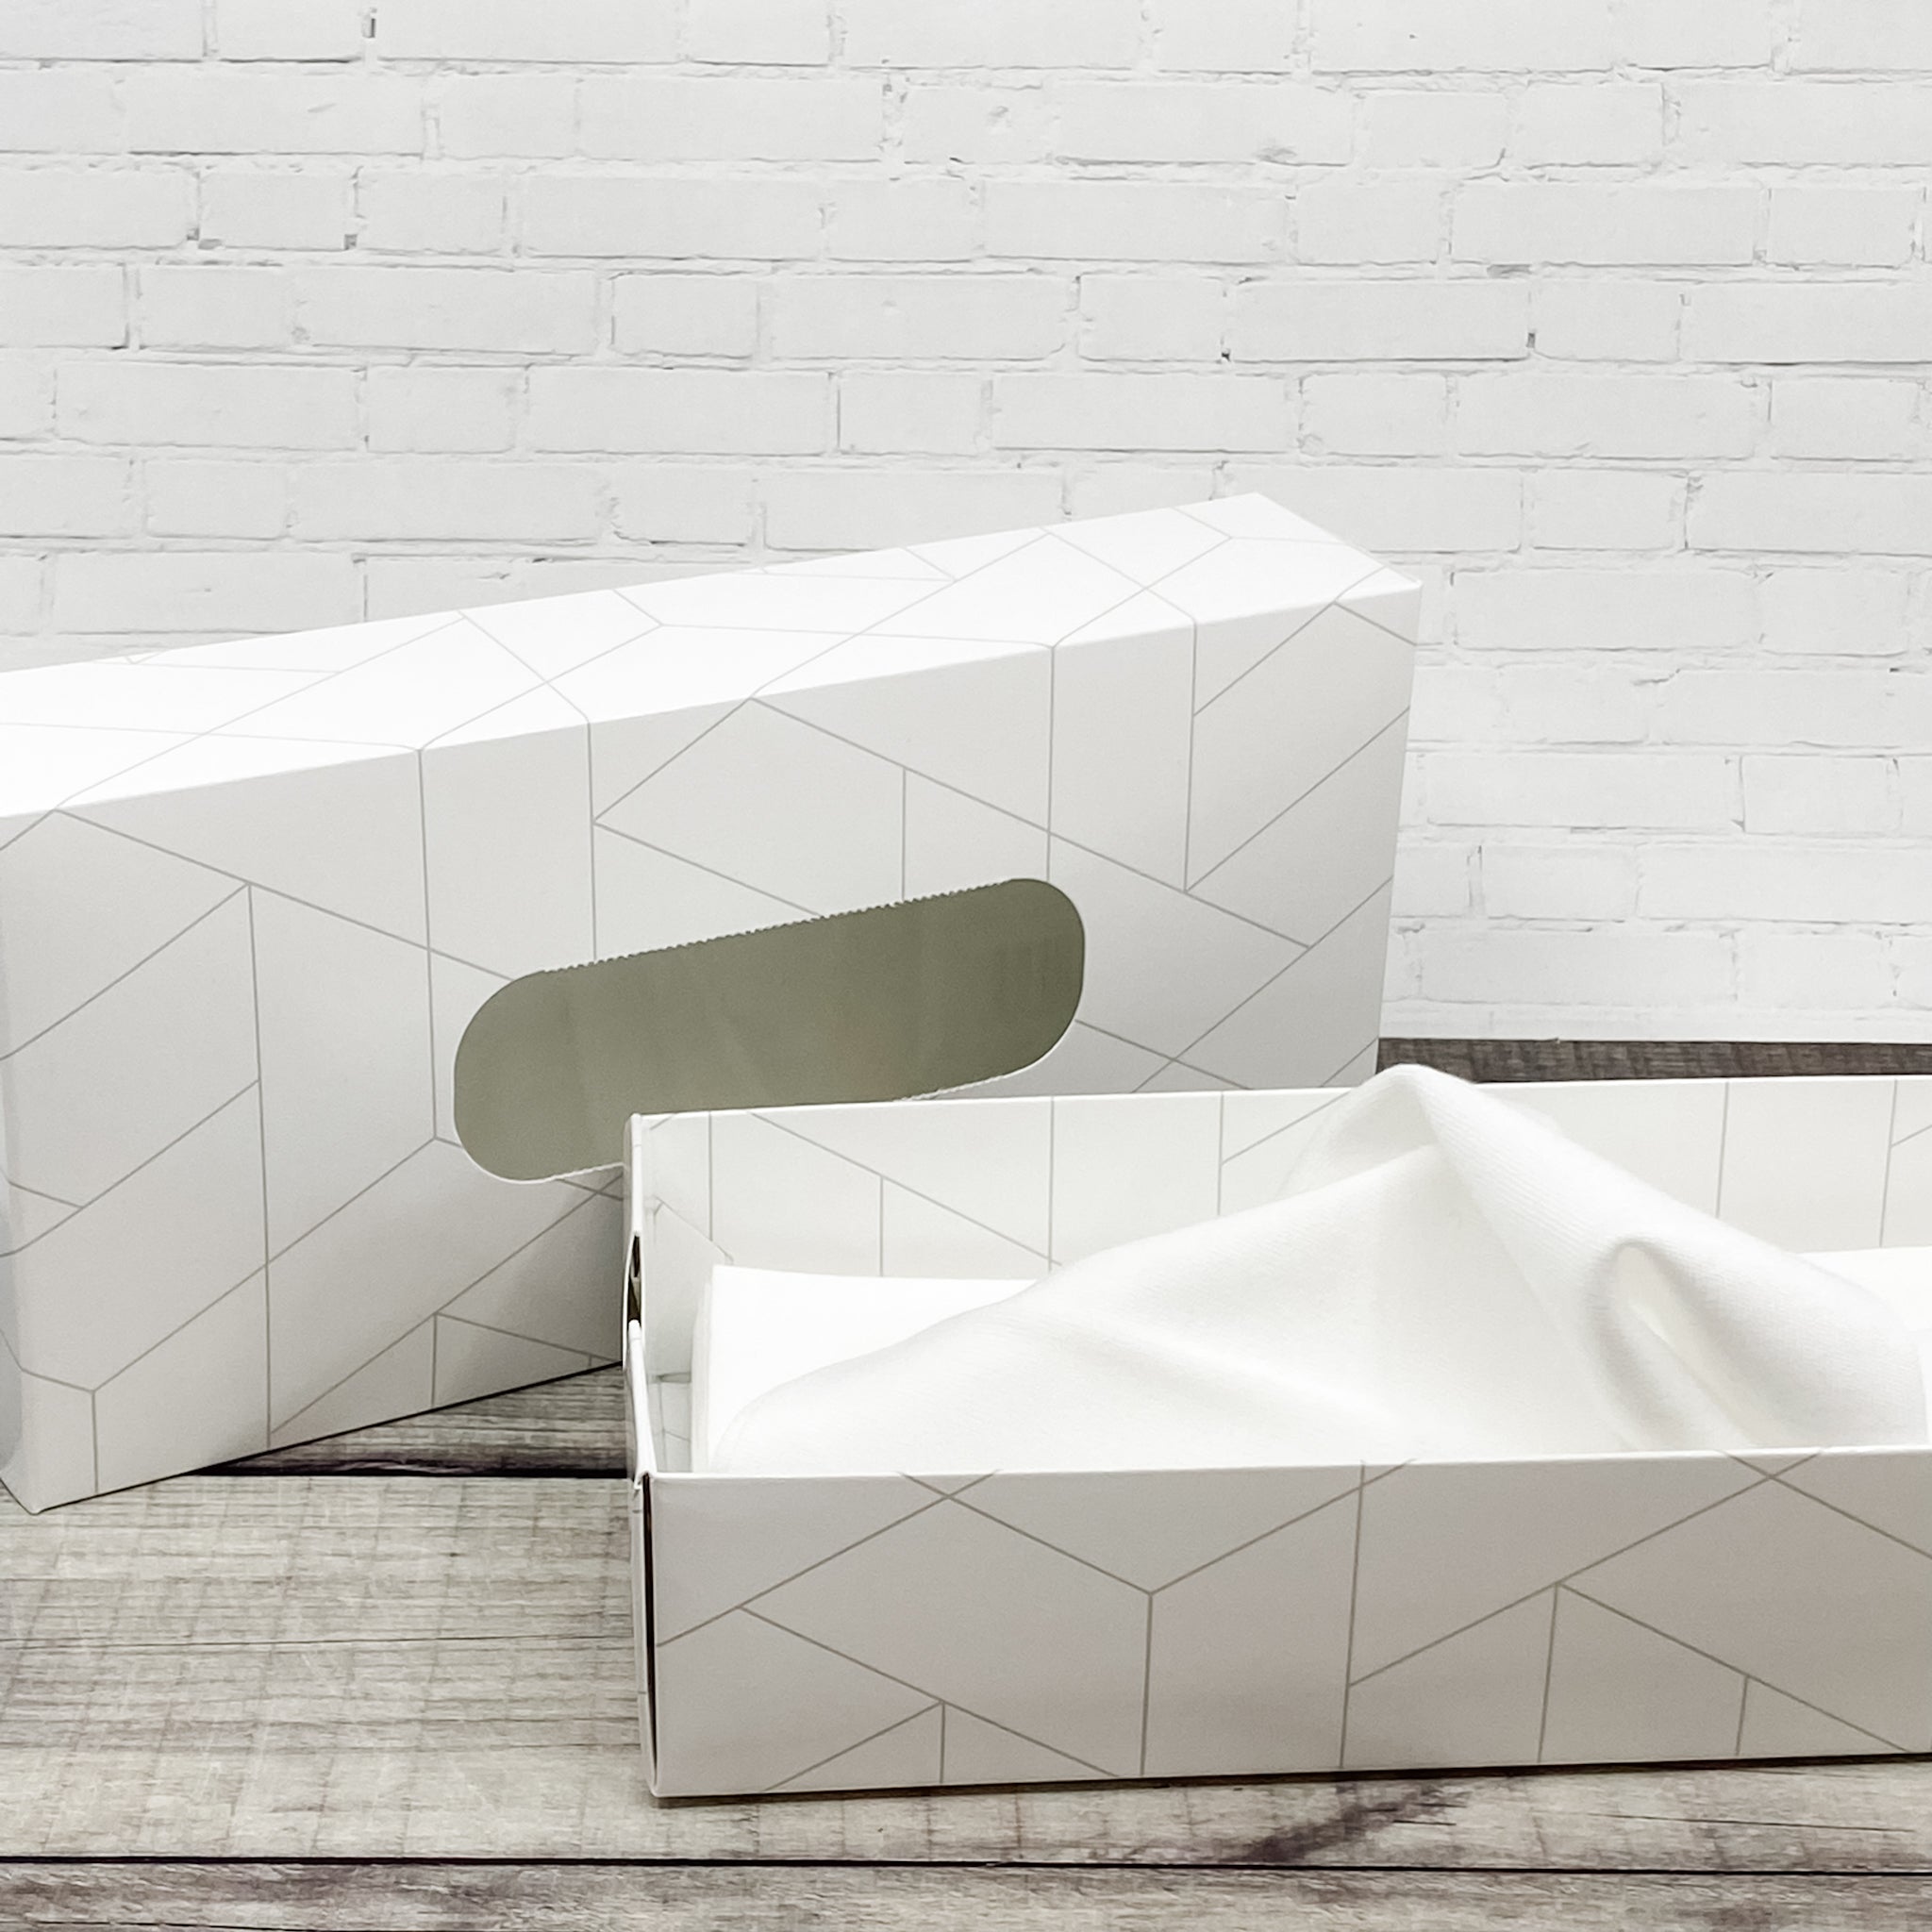 Mouchoirs lavables blancs avec boite en carton ouverte